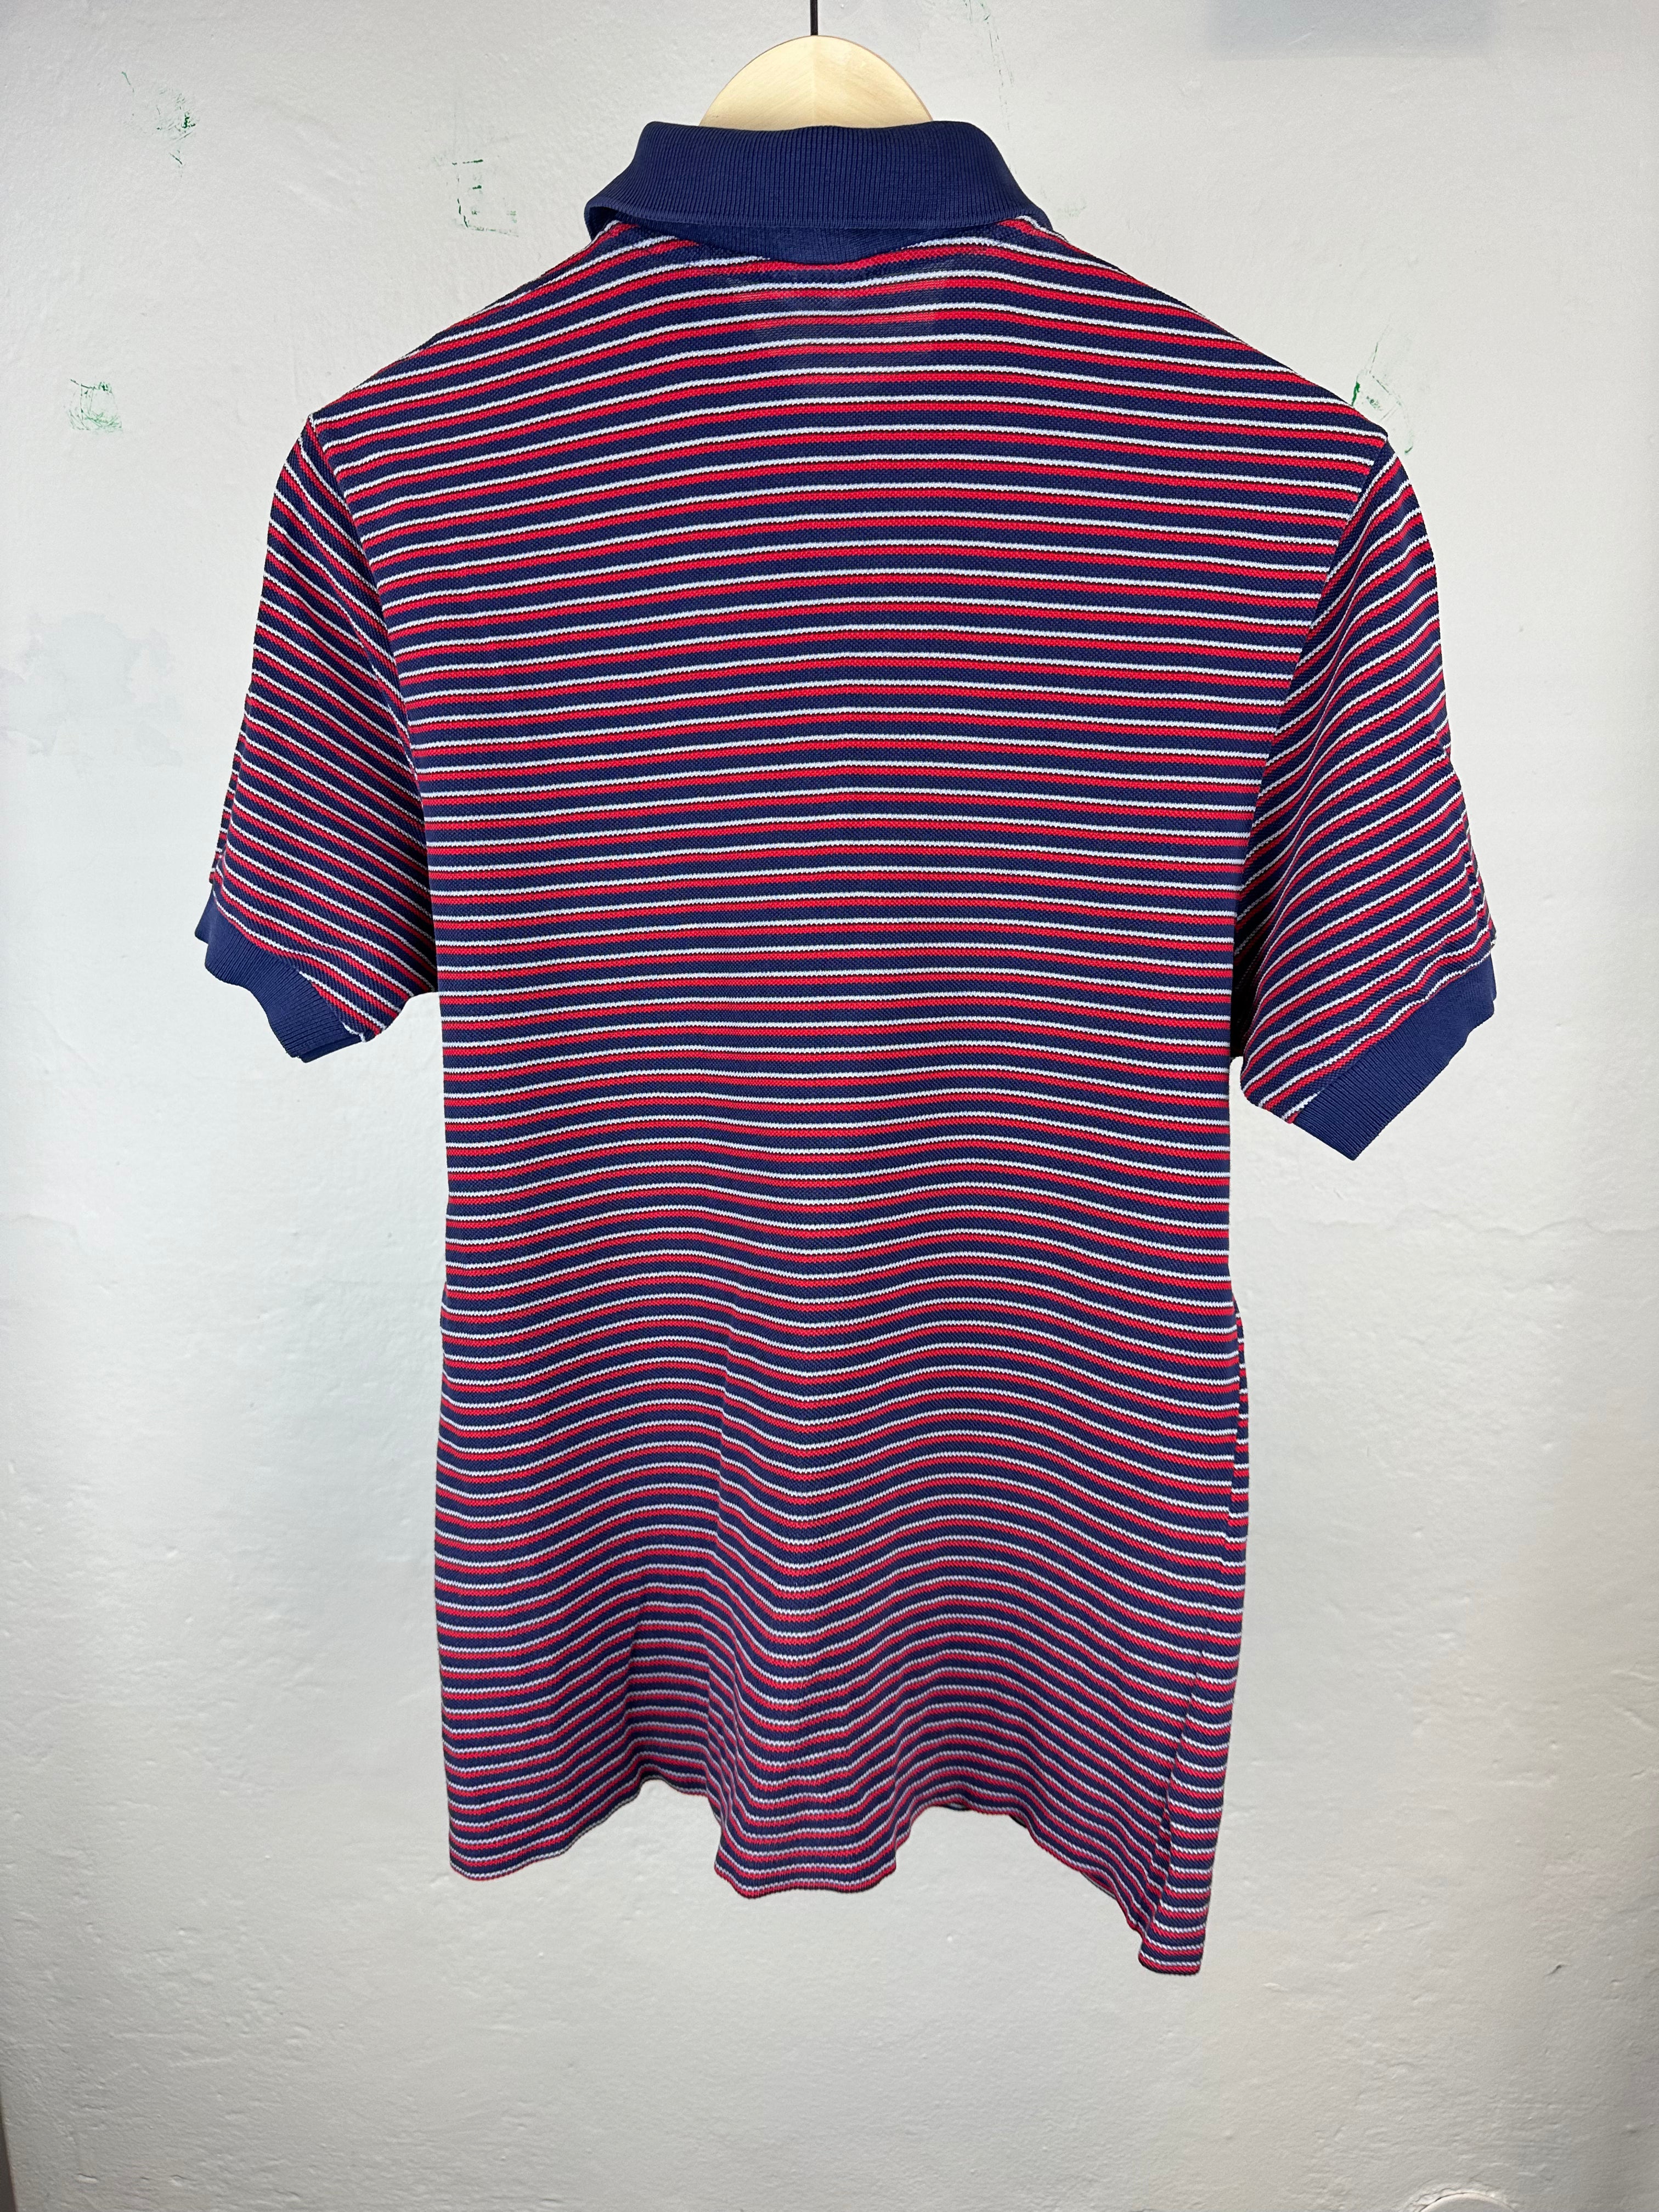 Vintage Lacoste 80s Polo T-shirt - size M